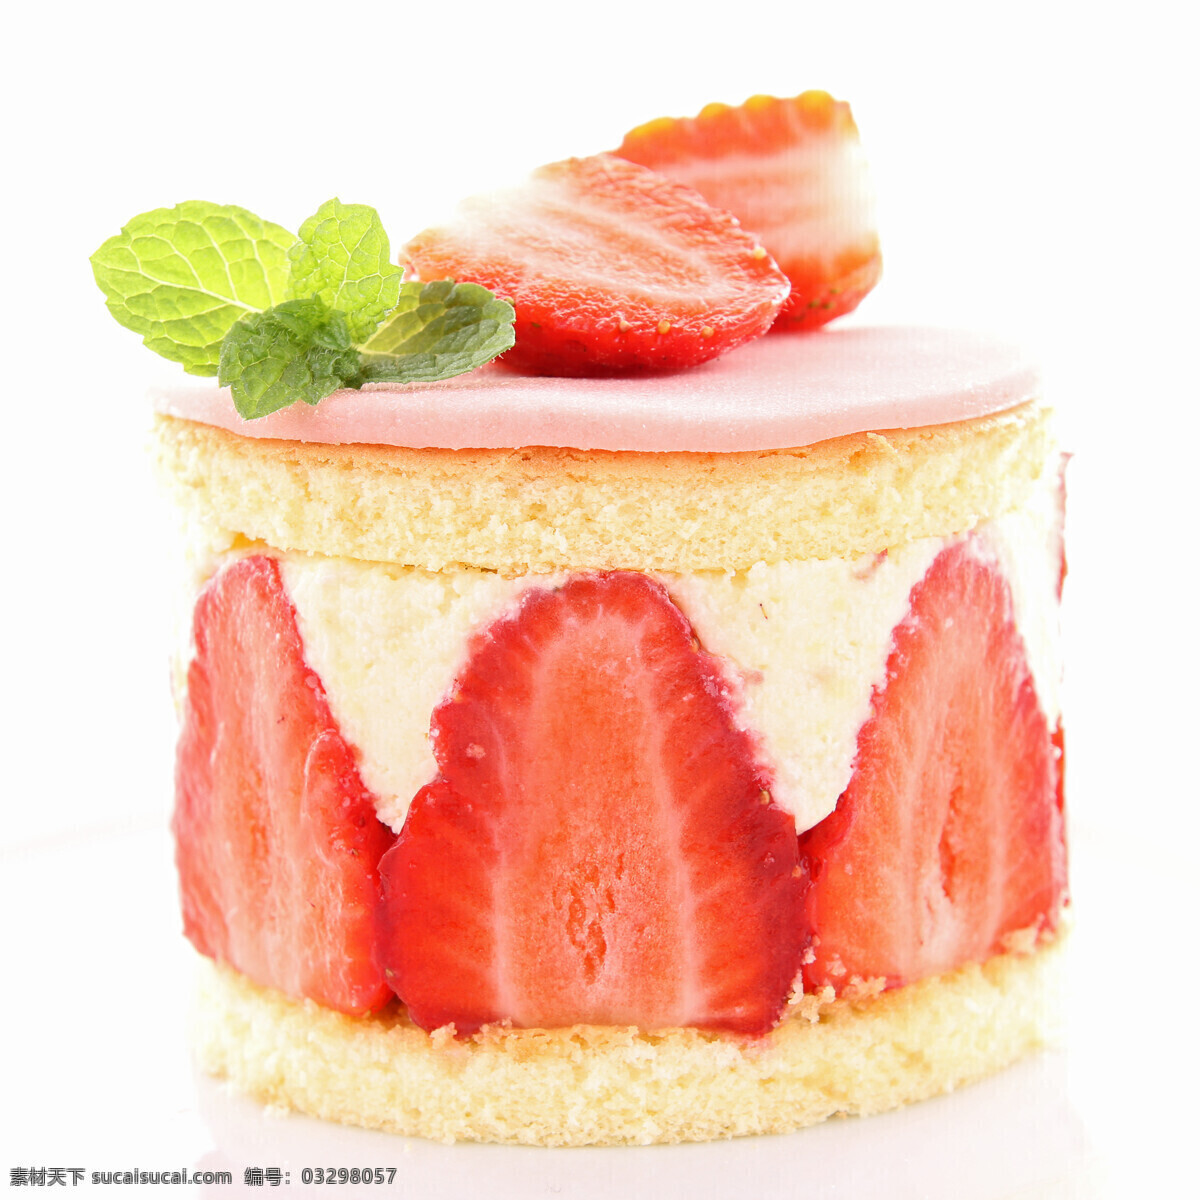 水果 草莓 蛋糕 草莓蛋糕 美味点心 甜点 果实 果子 新鲜水果 水果背景 水果图片 餐饮美食